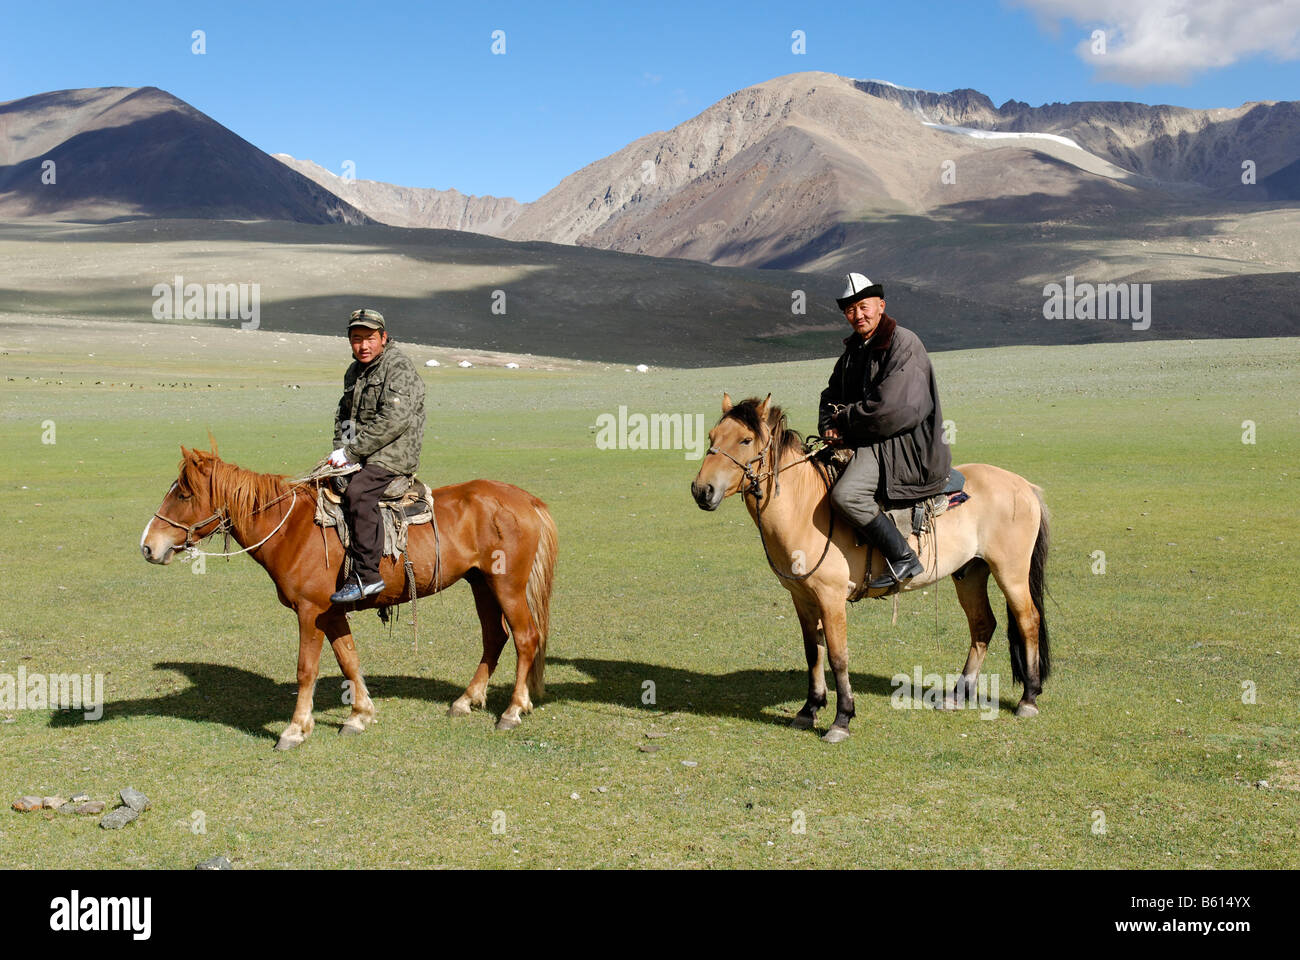 Kazakh, Mongolian riders with horses, Altai, Kazakhstan, Mongolia, Asia Stock Photo